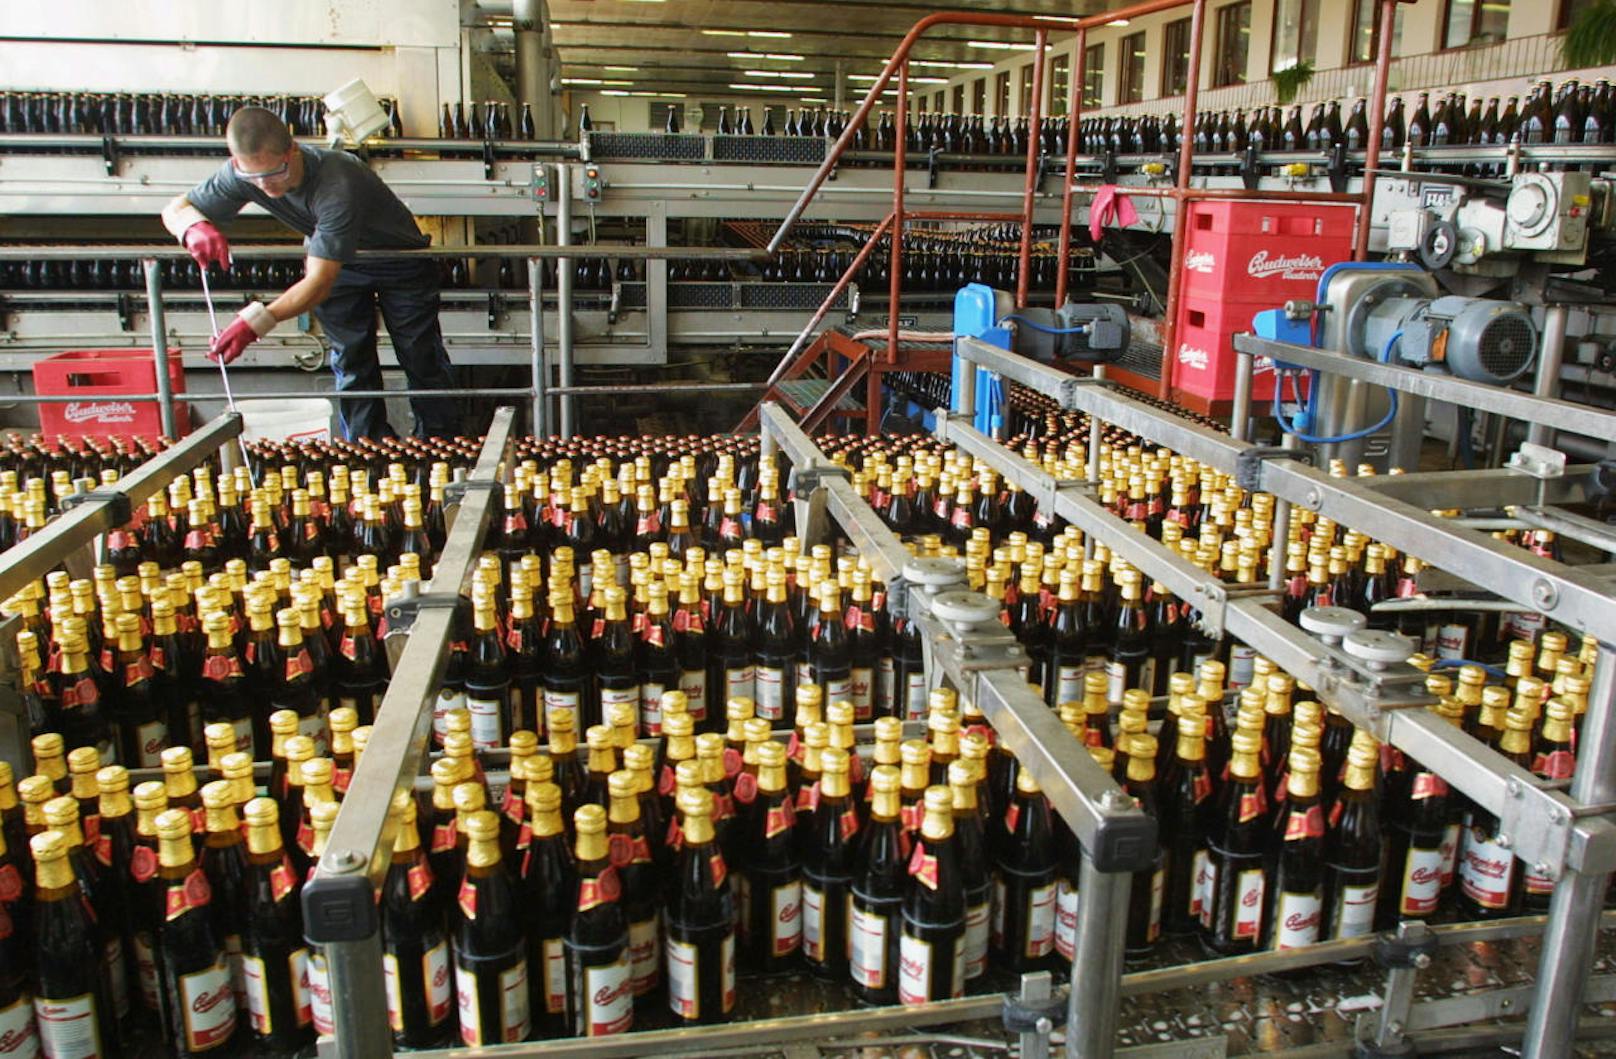 Mit rund 411,5 Millionen Hektoliter Bier (21 Prozent der gesamten Bierproduktion) ist die belgische Brauereigruppe "AB InBev" der größte Bierproduzent weltweit.